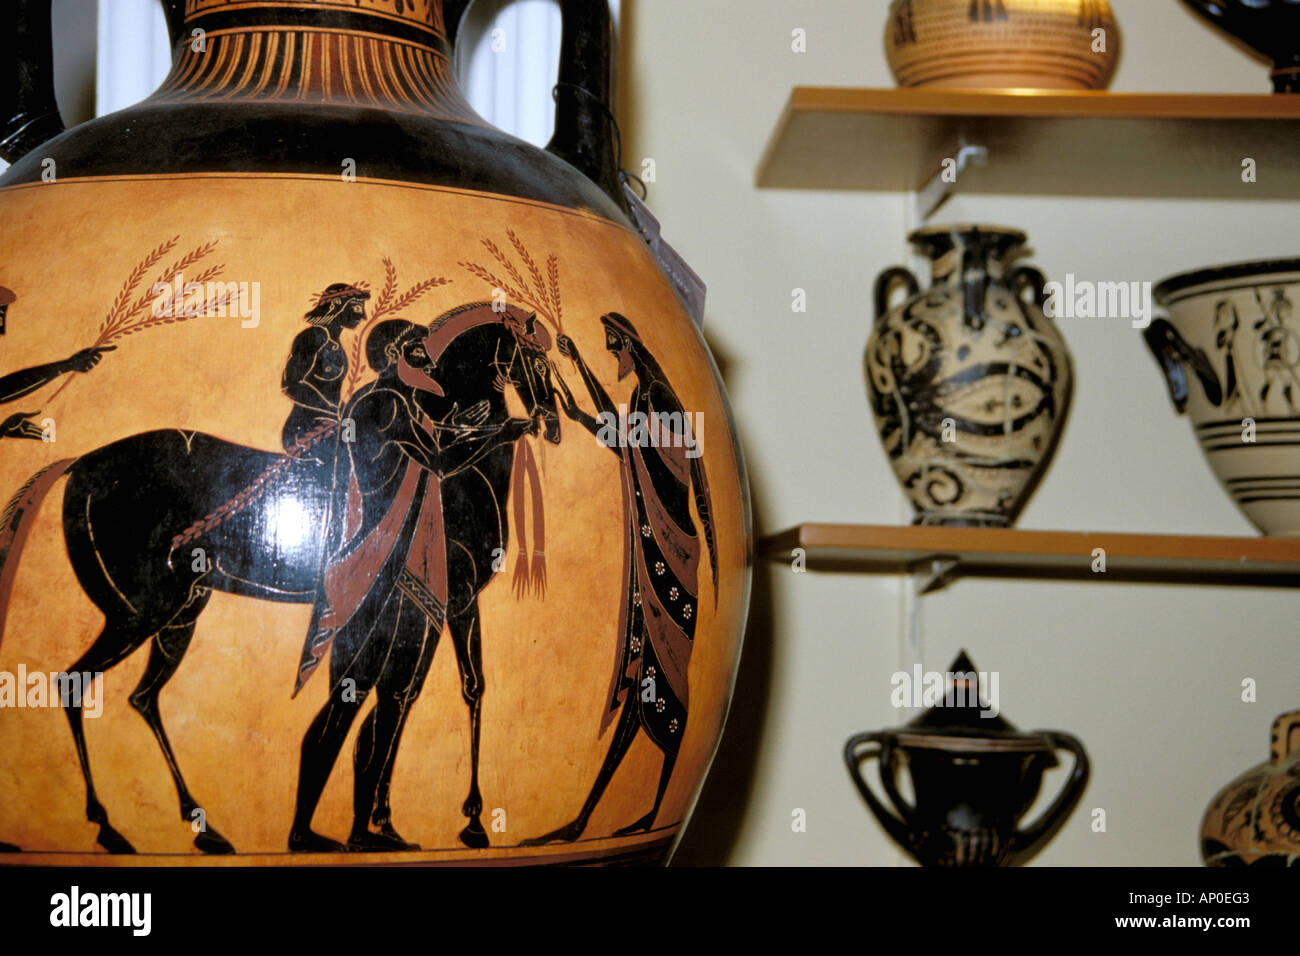 In Europa, in Grecia, Amforgeas. Area dello Shopping, vasi in ceramica del periodo Archaic-Classic (700-332 a.C.) copie del museo Foto Stock